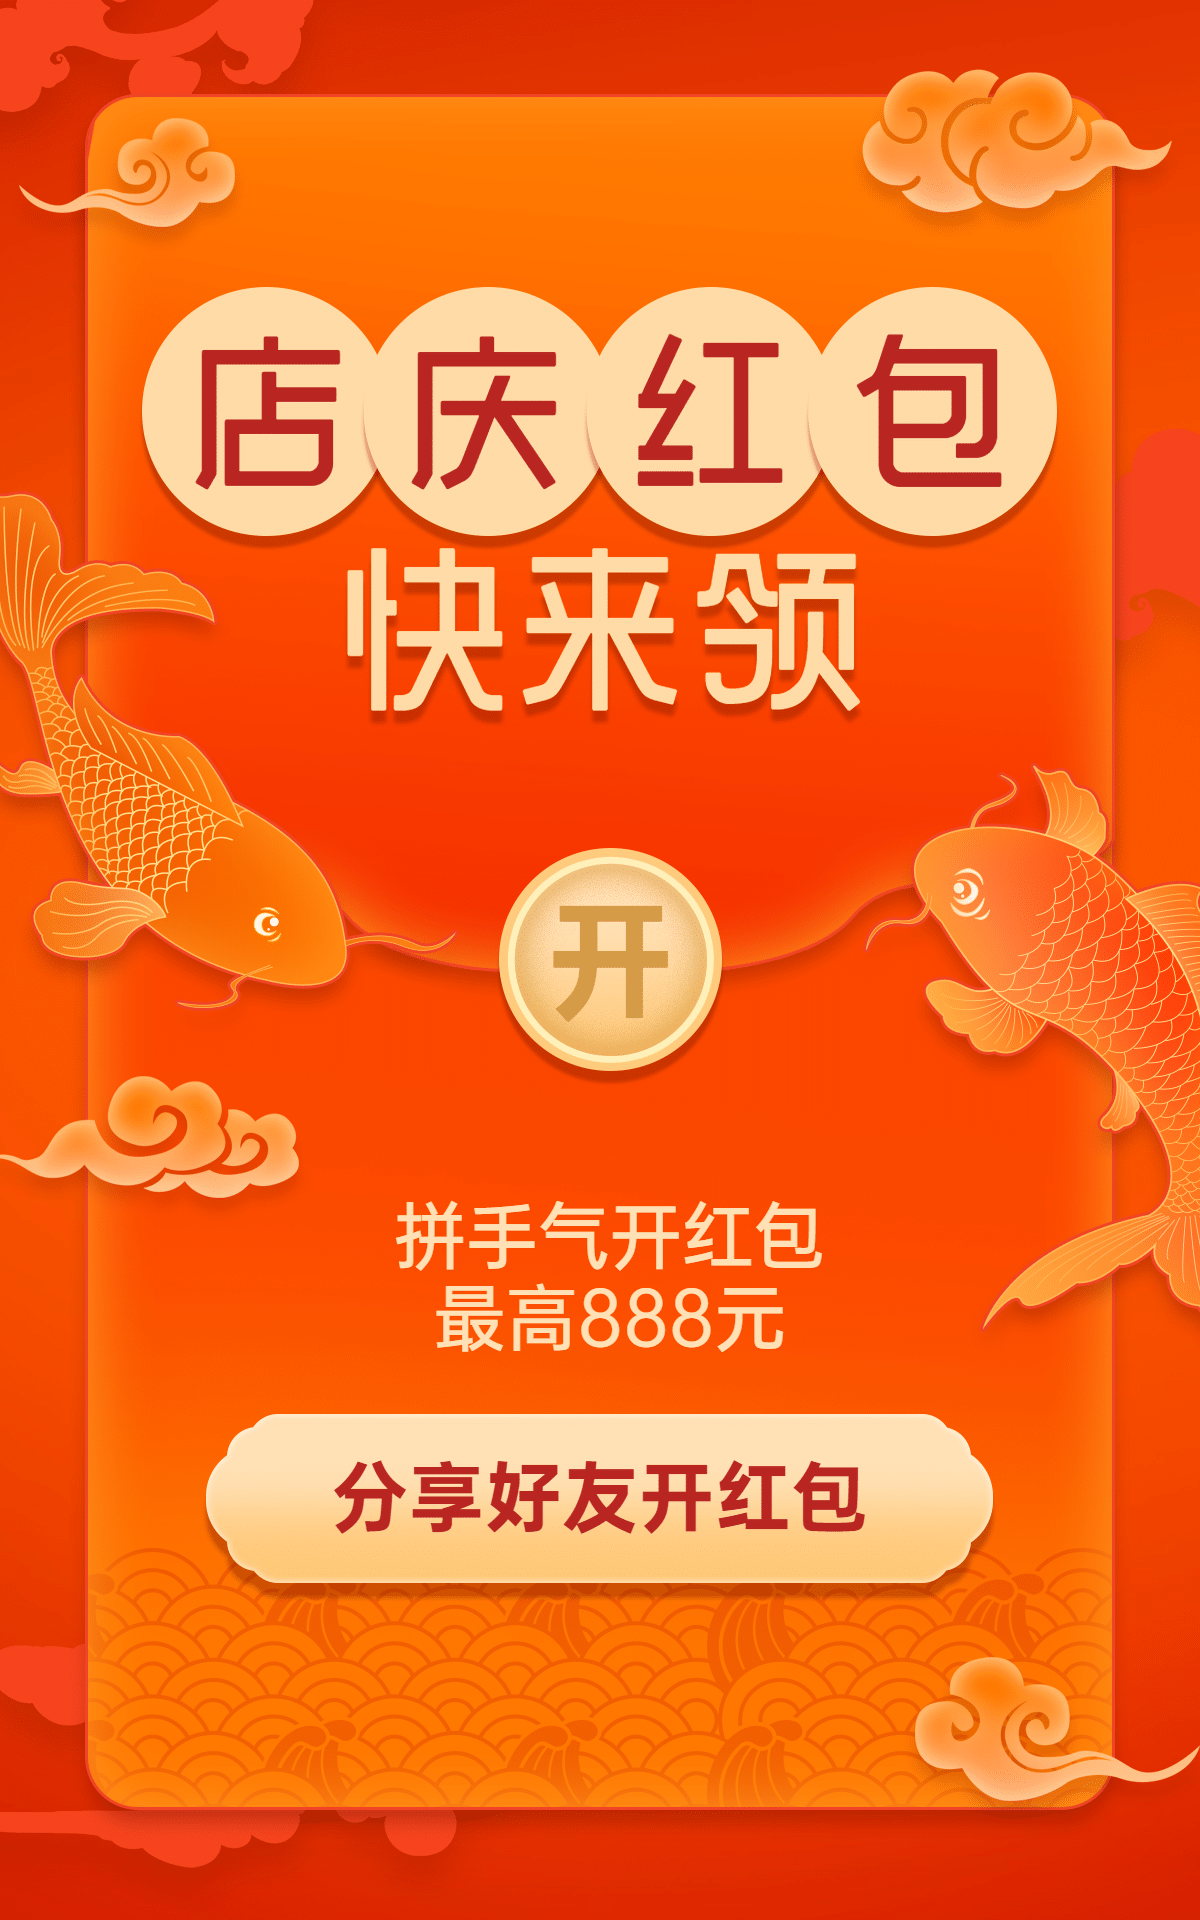 中国风促销店庆周年庆红包海报